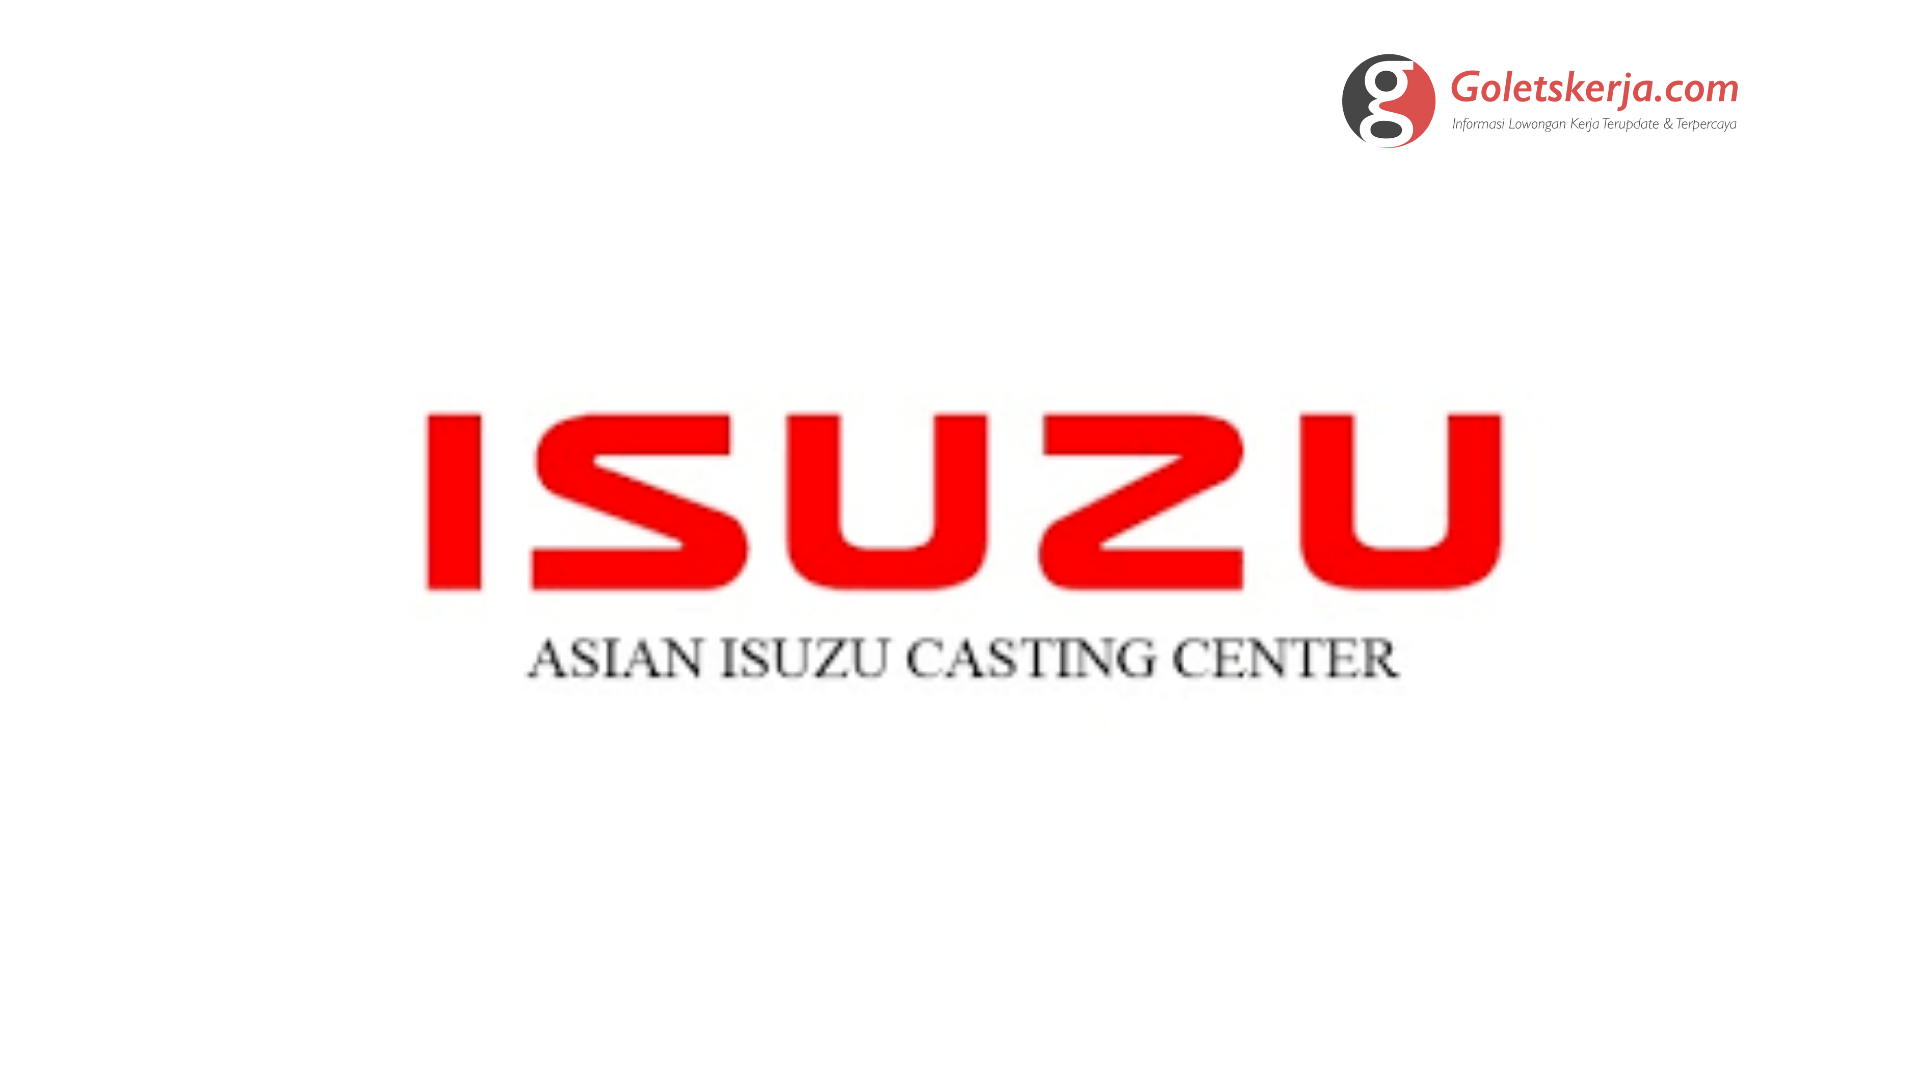 Lowongan Kerja PT Asian Isuzu Casting Center